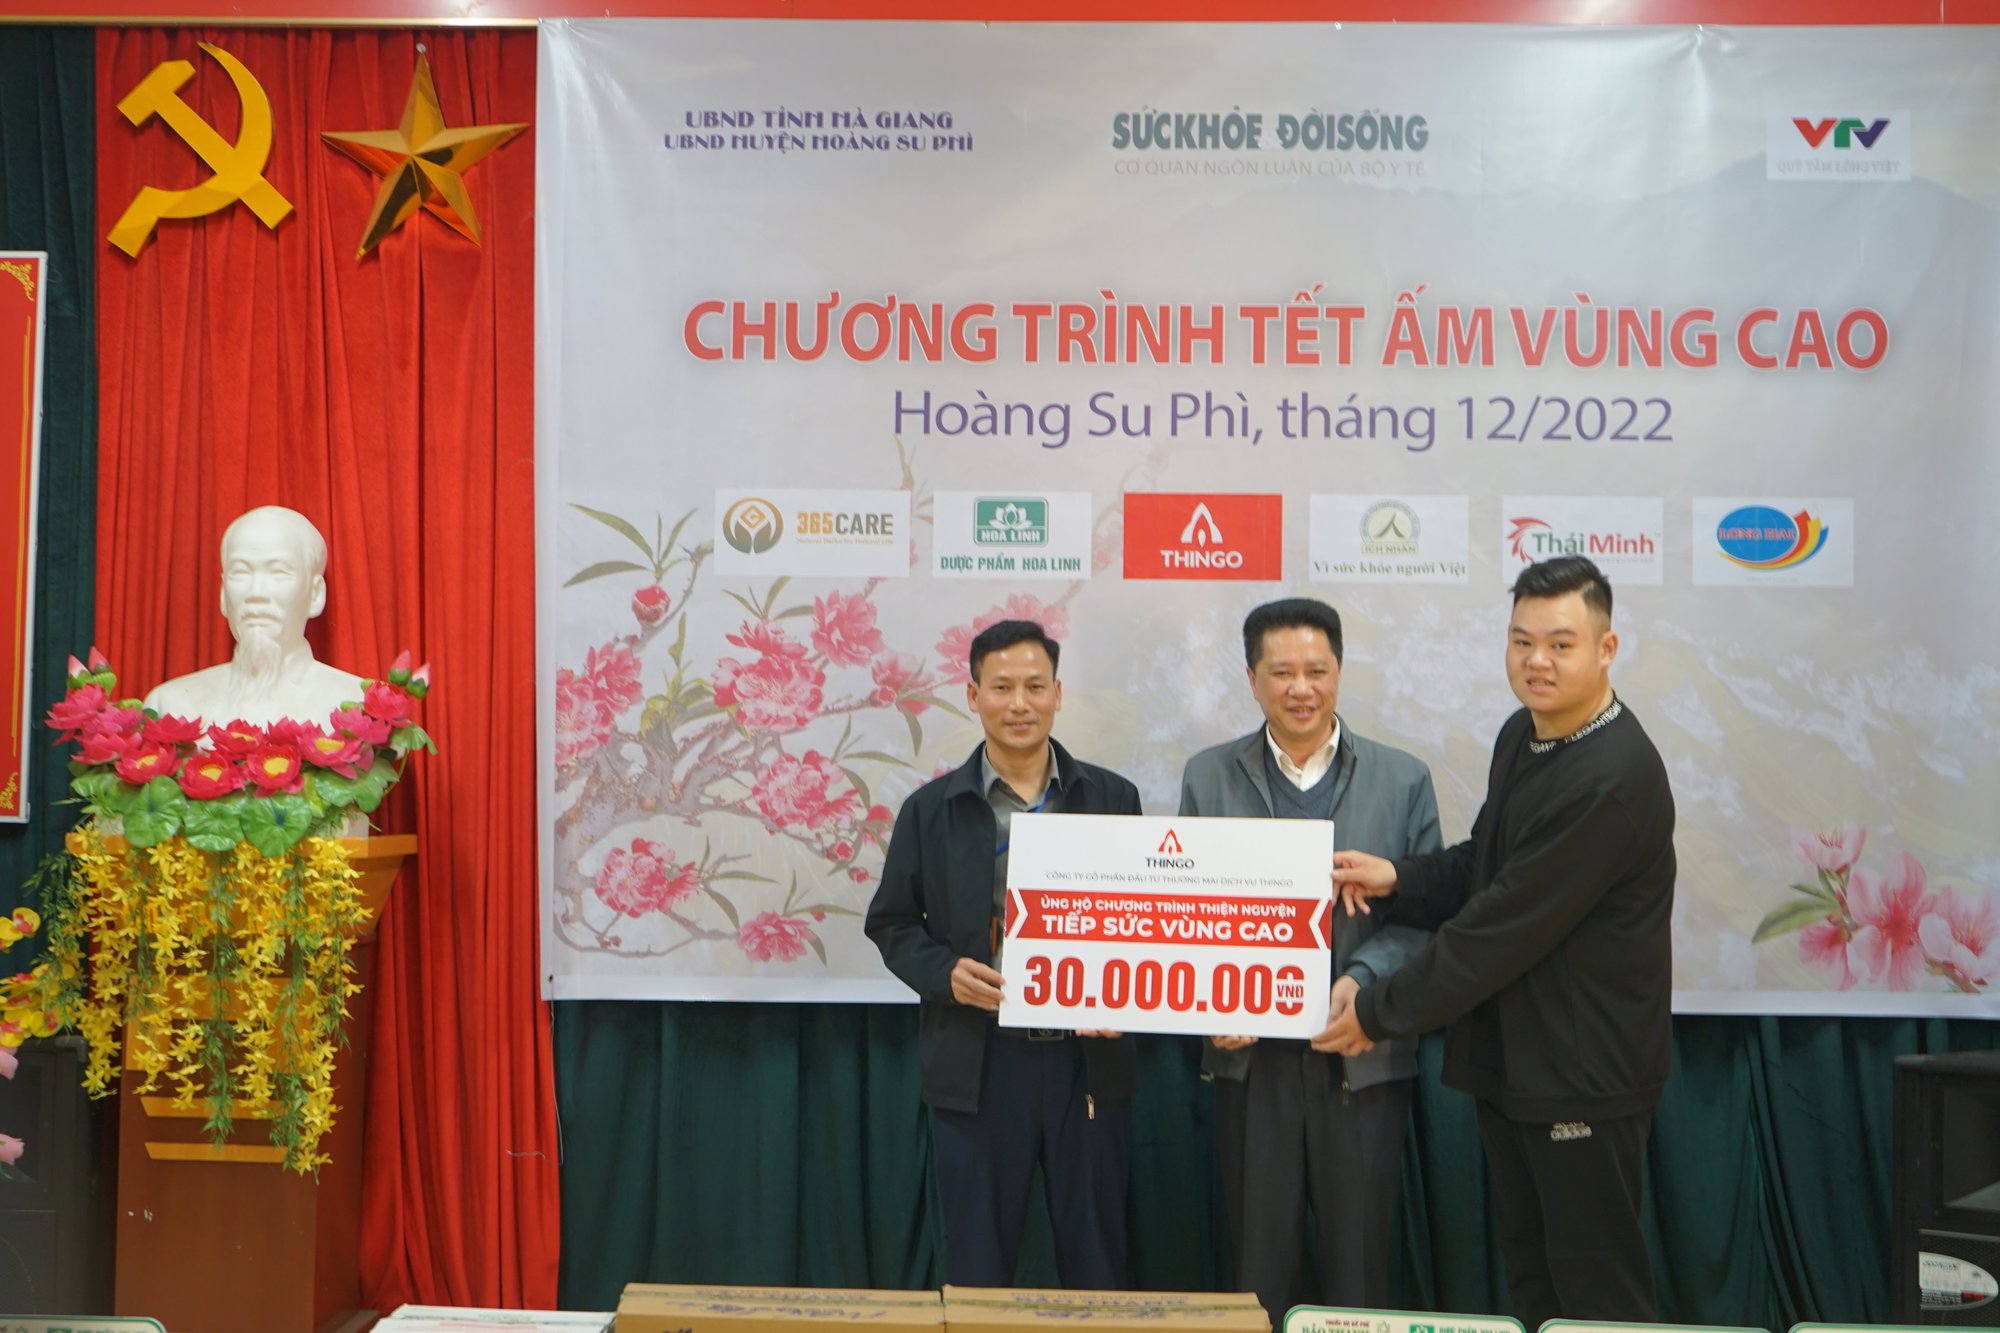 Chương trình thiện nguyện “Tết ấm vùng cao” trao và tặng quà cho 10 trạm y tế của huyện Hoàng Su Phì - Ảnh 7.